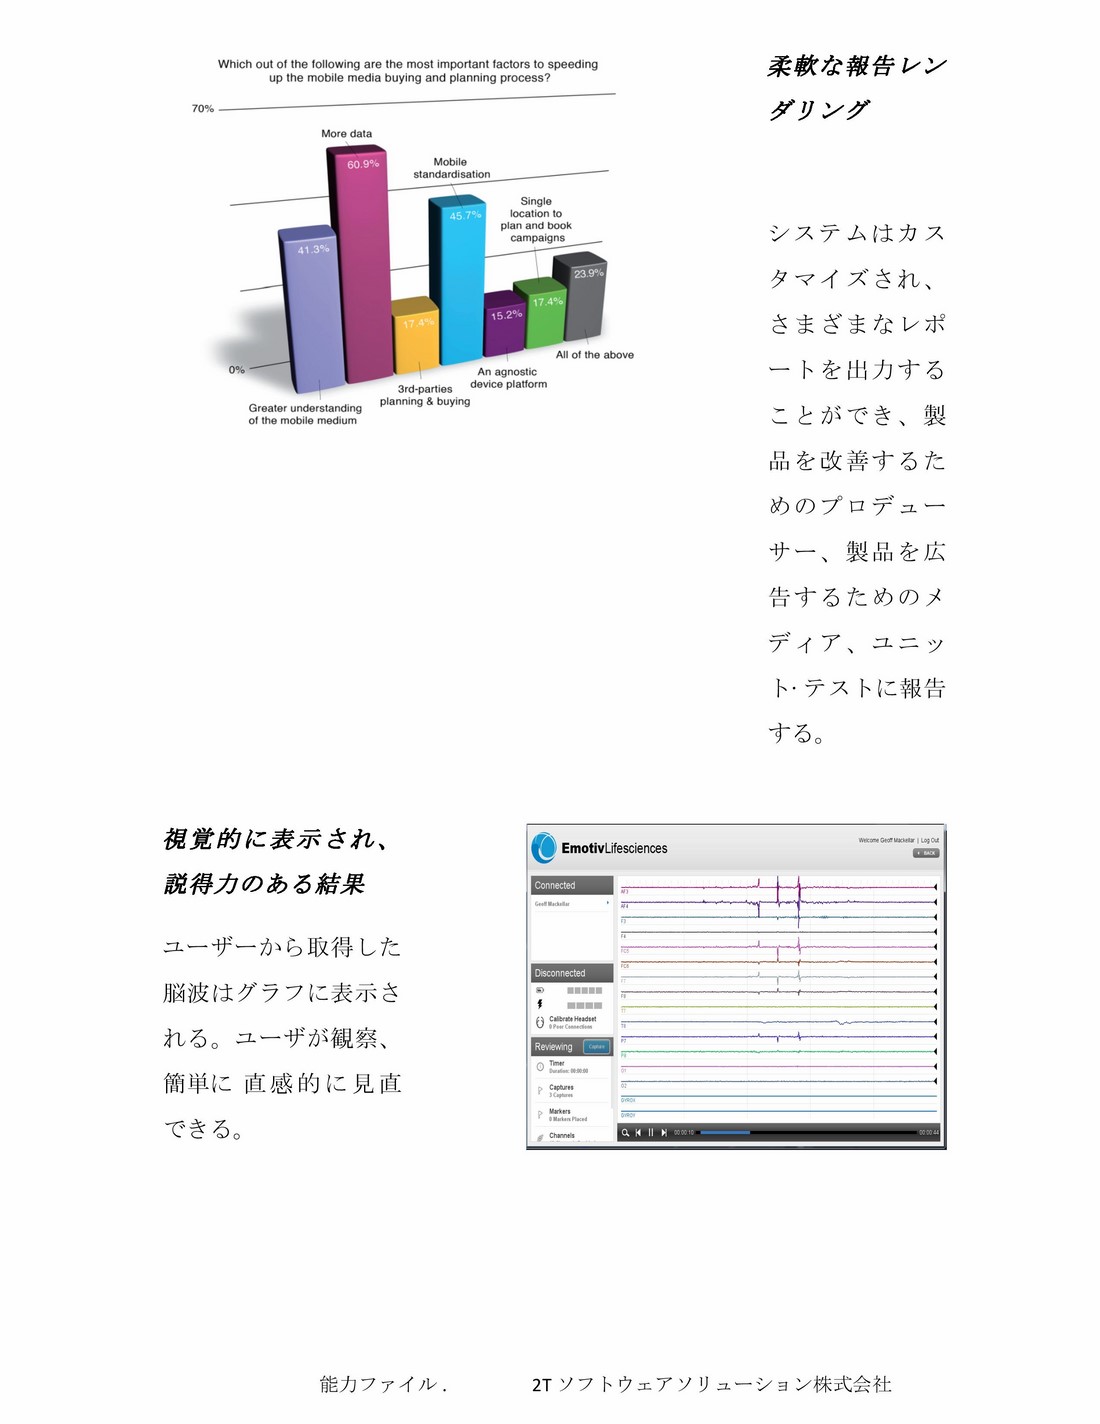 2TS Profile_jap_2015-10-21-page-029 (Copy)